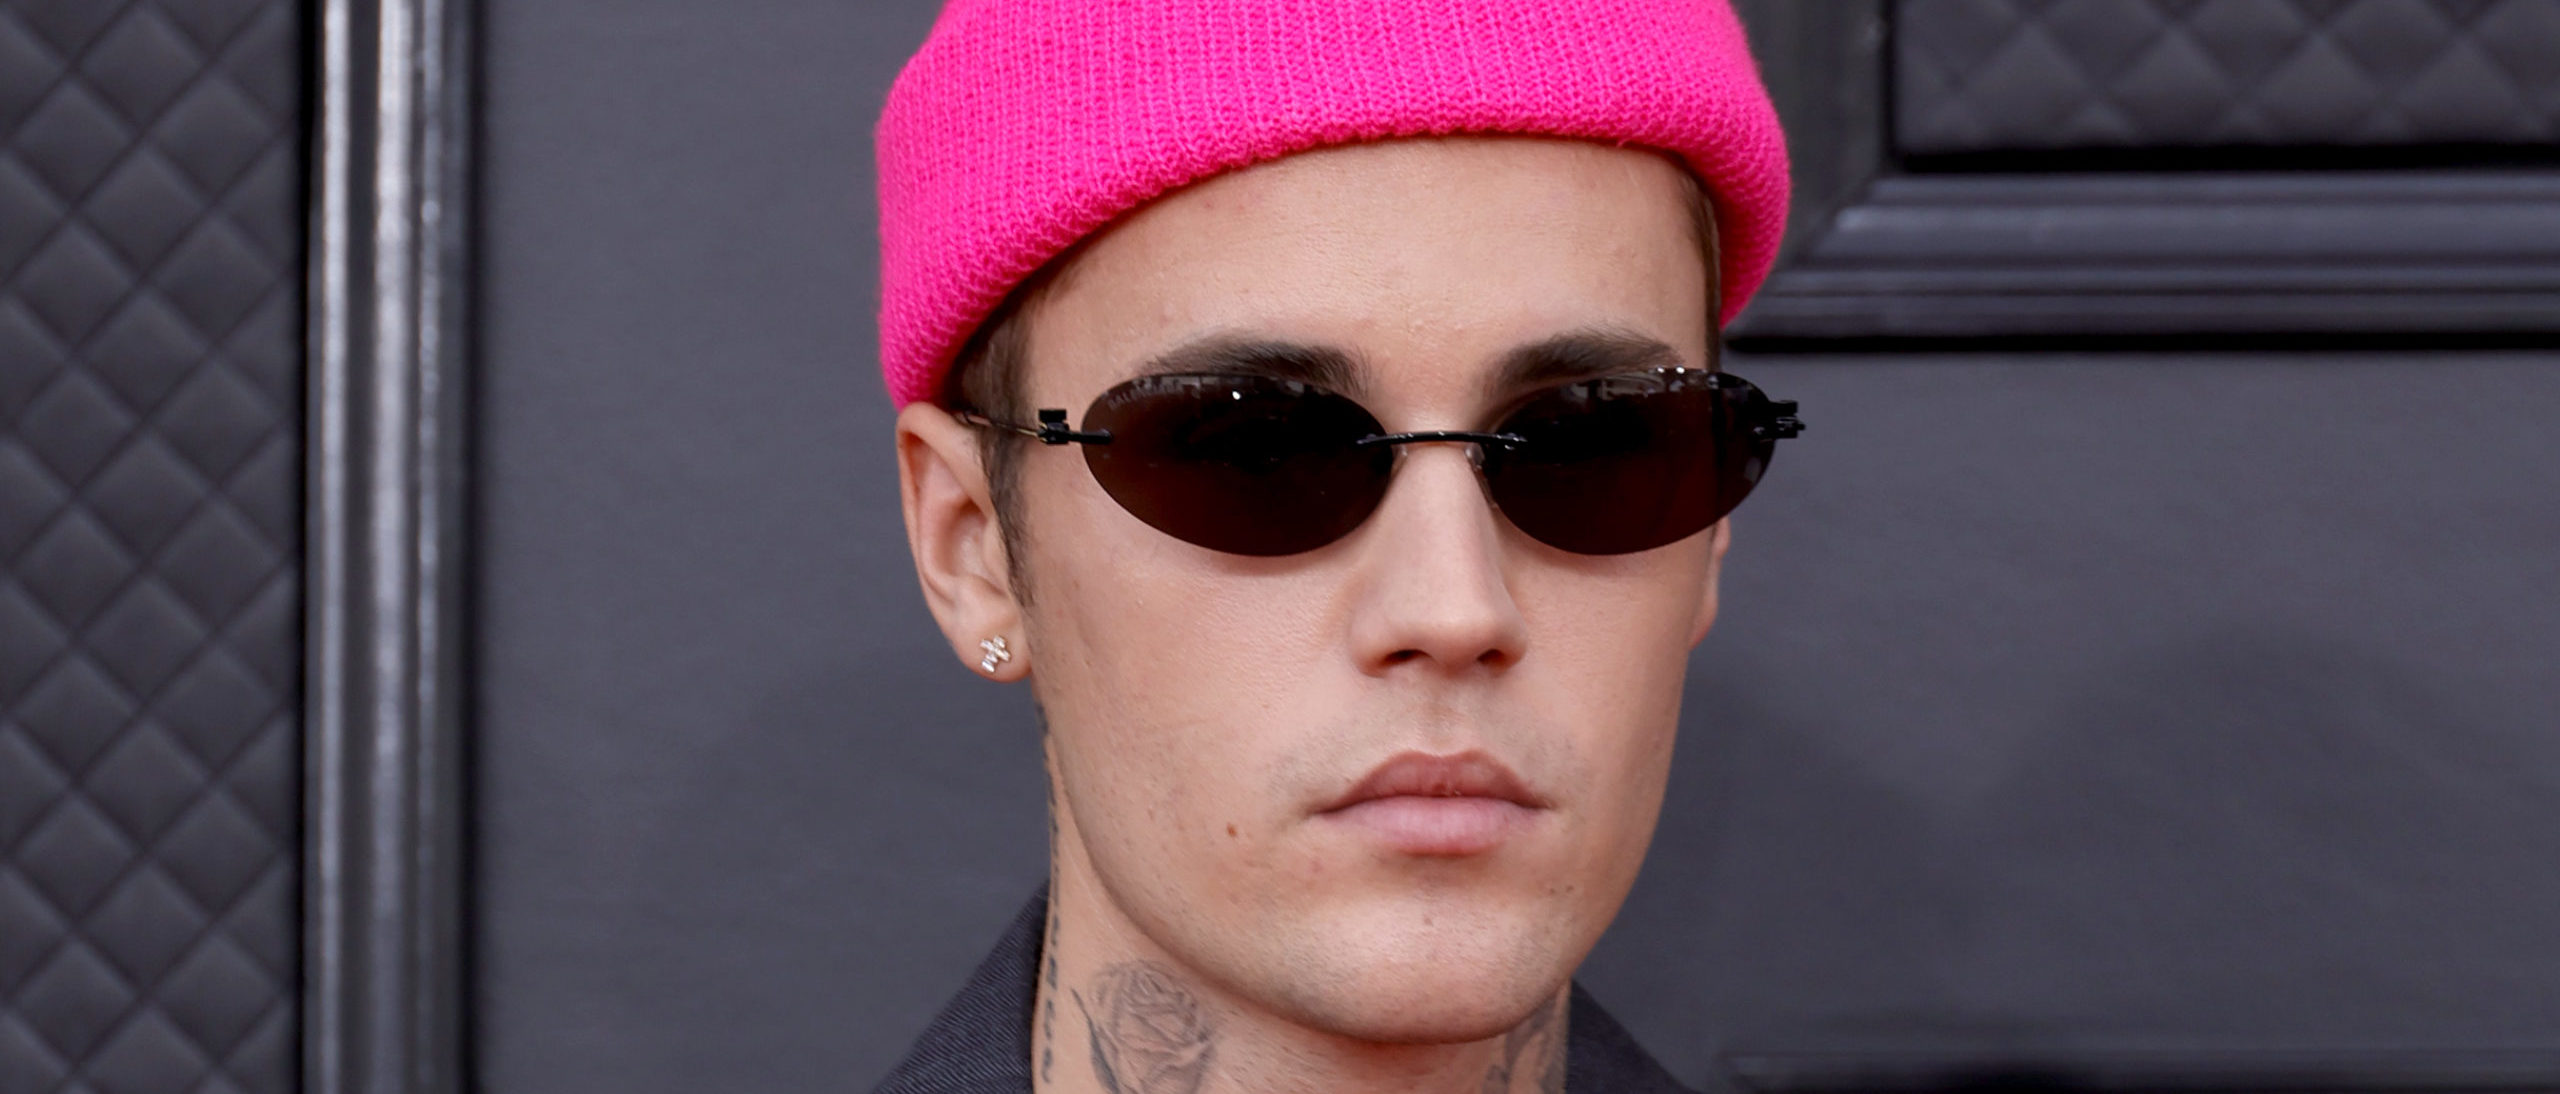 Justin Bieber sufre parálisis facial parcial debido a una rara enfermedad